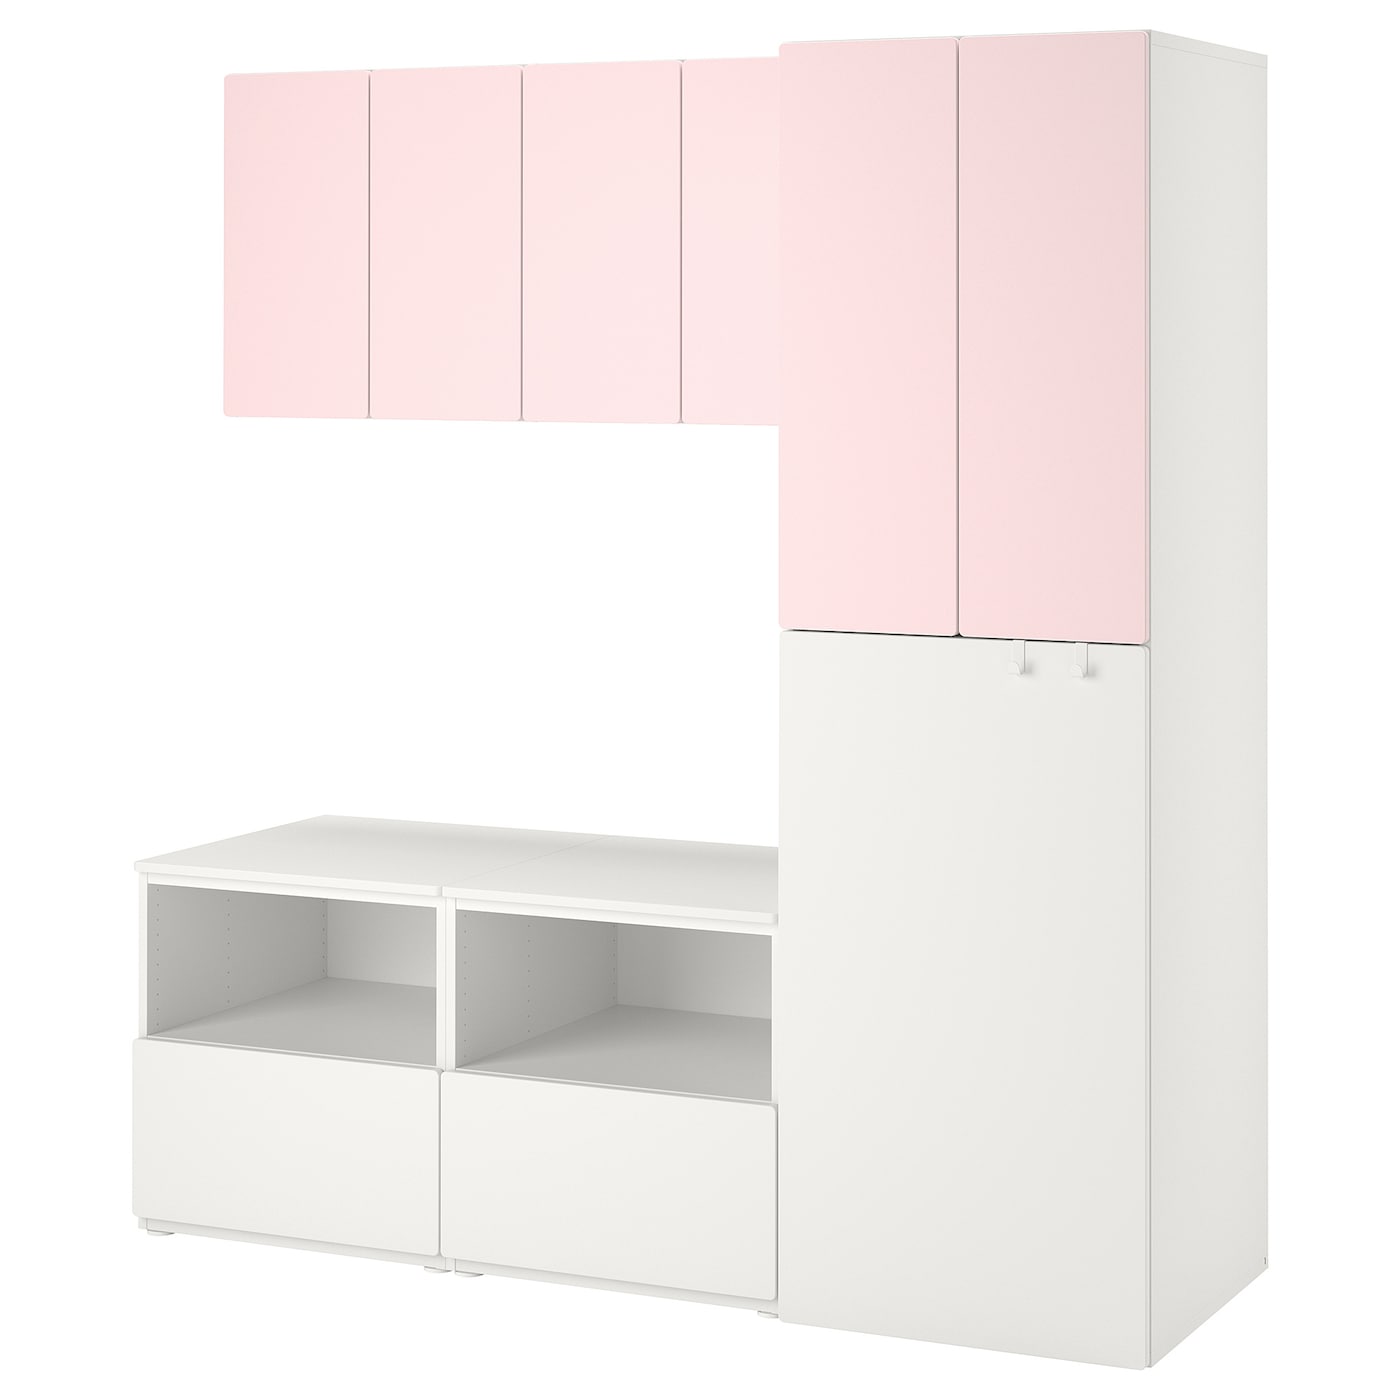 Детская гардеробная комбинация - IKEA PLATSA SMÅSTAD/SMASTAD, 196x57x180см, белый/розовый, ПЛАТСА СМОСТАД ИКЕА